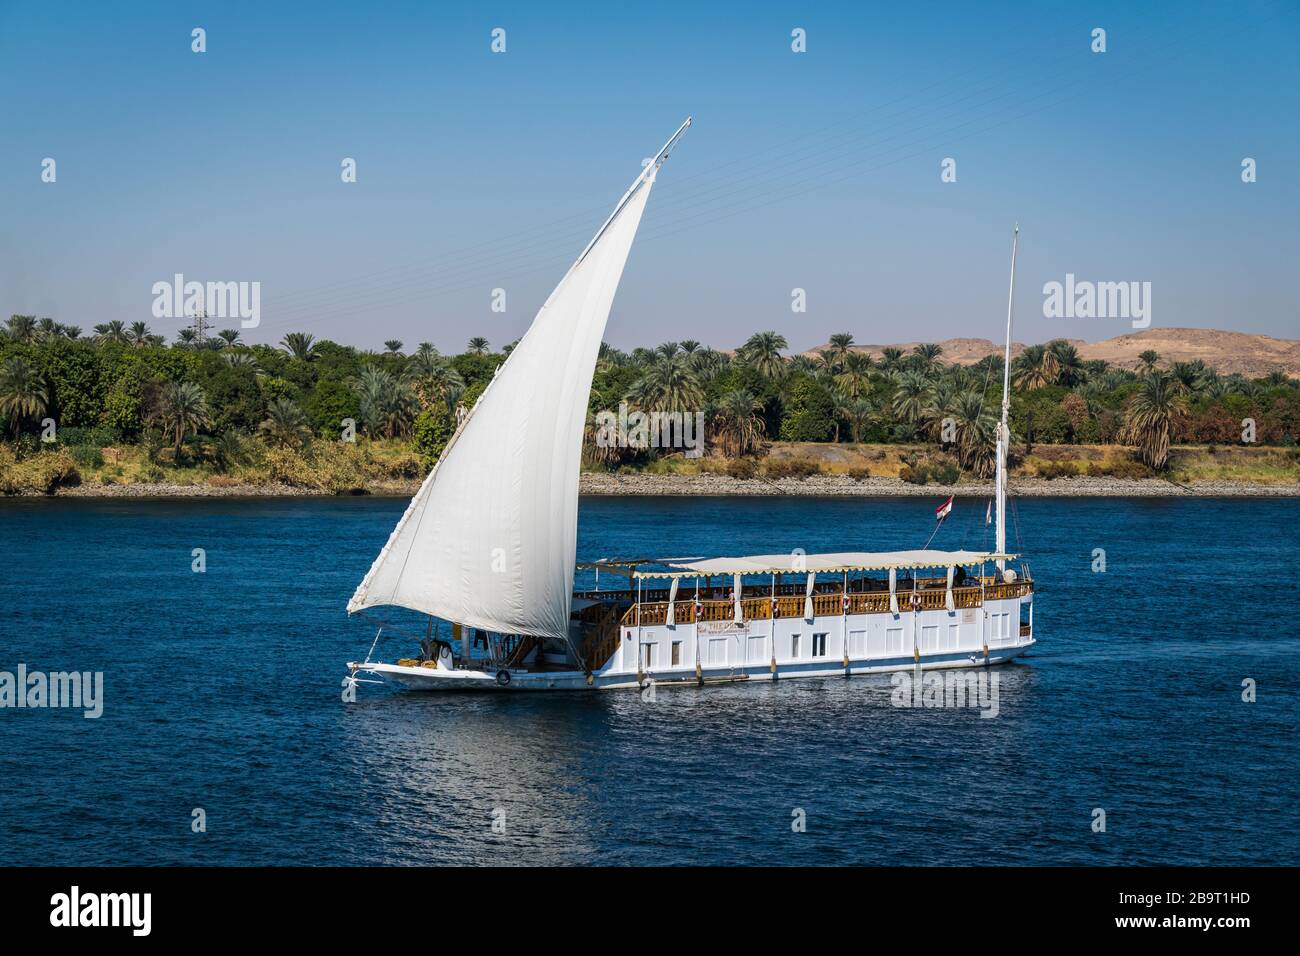 bateau traditionnel au nil. dahabiya est parfait pour une croisière relaxante sur le nil en egypte entre louxor et assouan. Banque D'Images